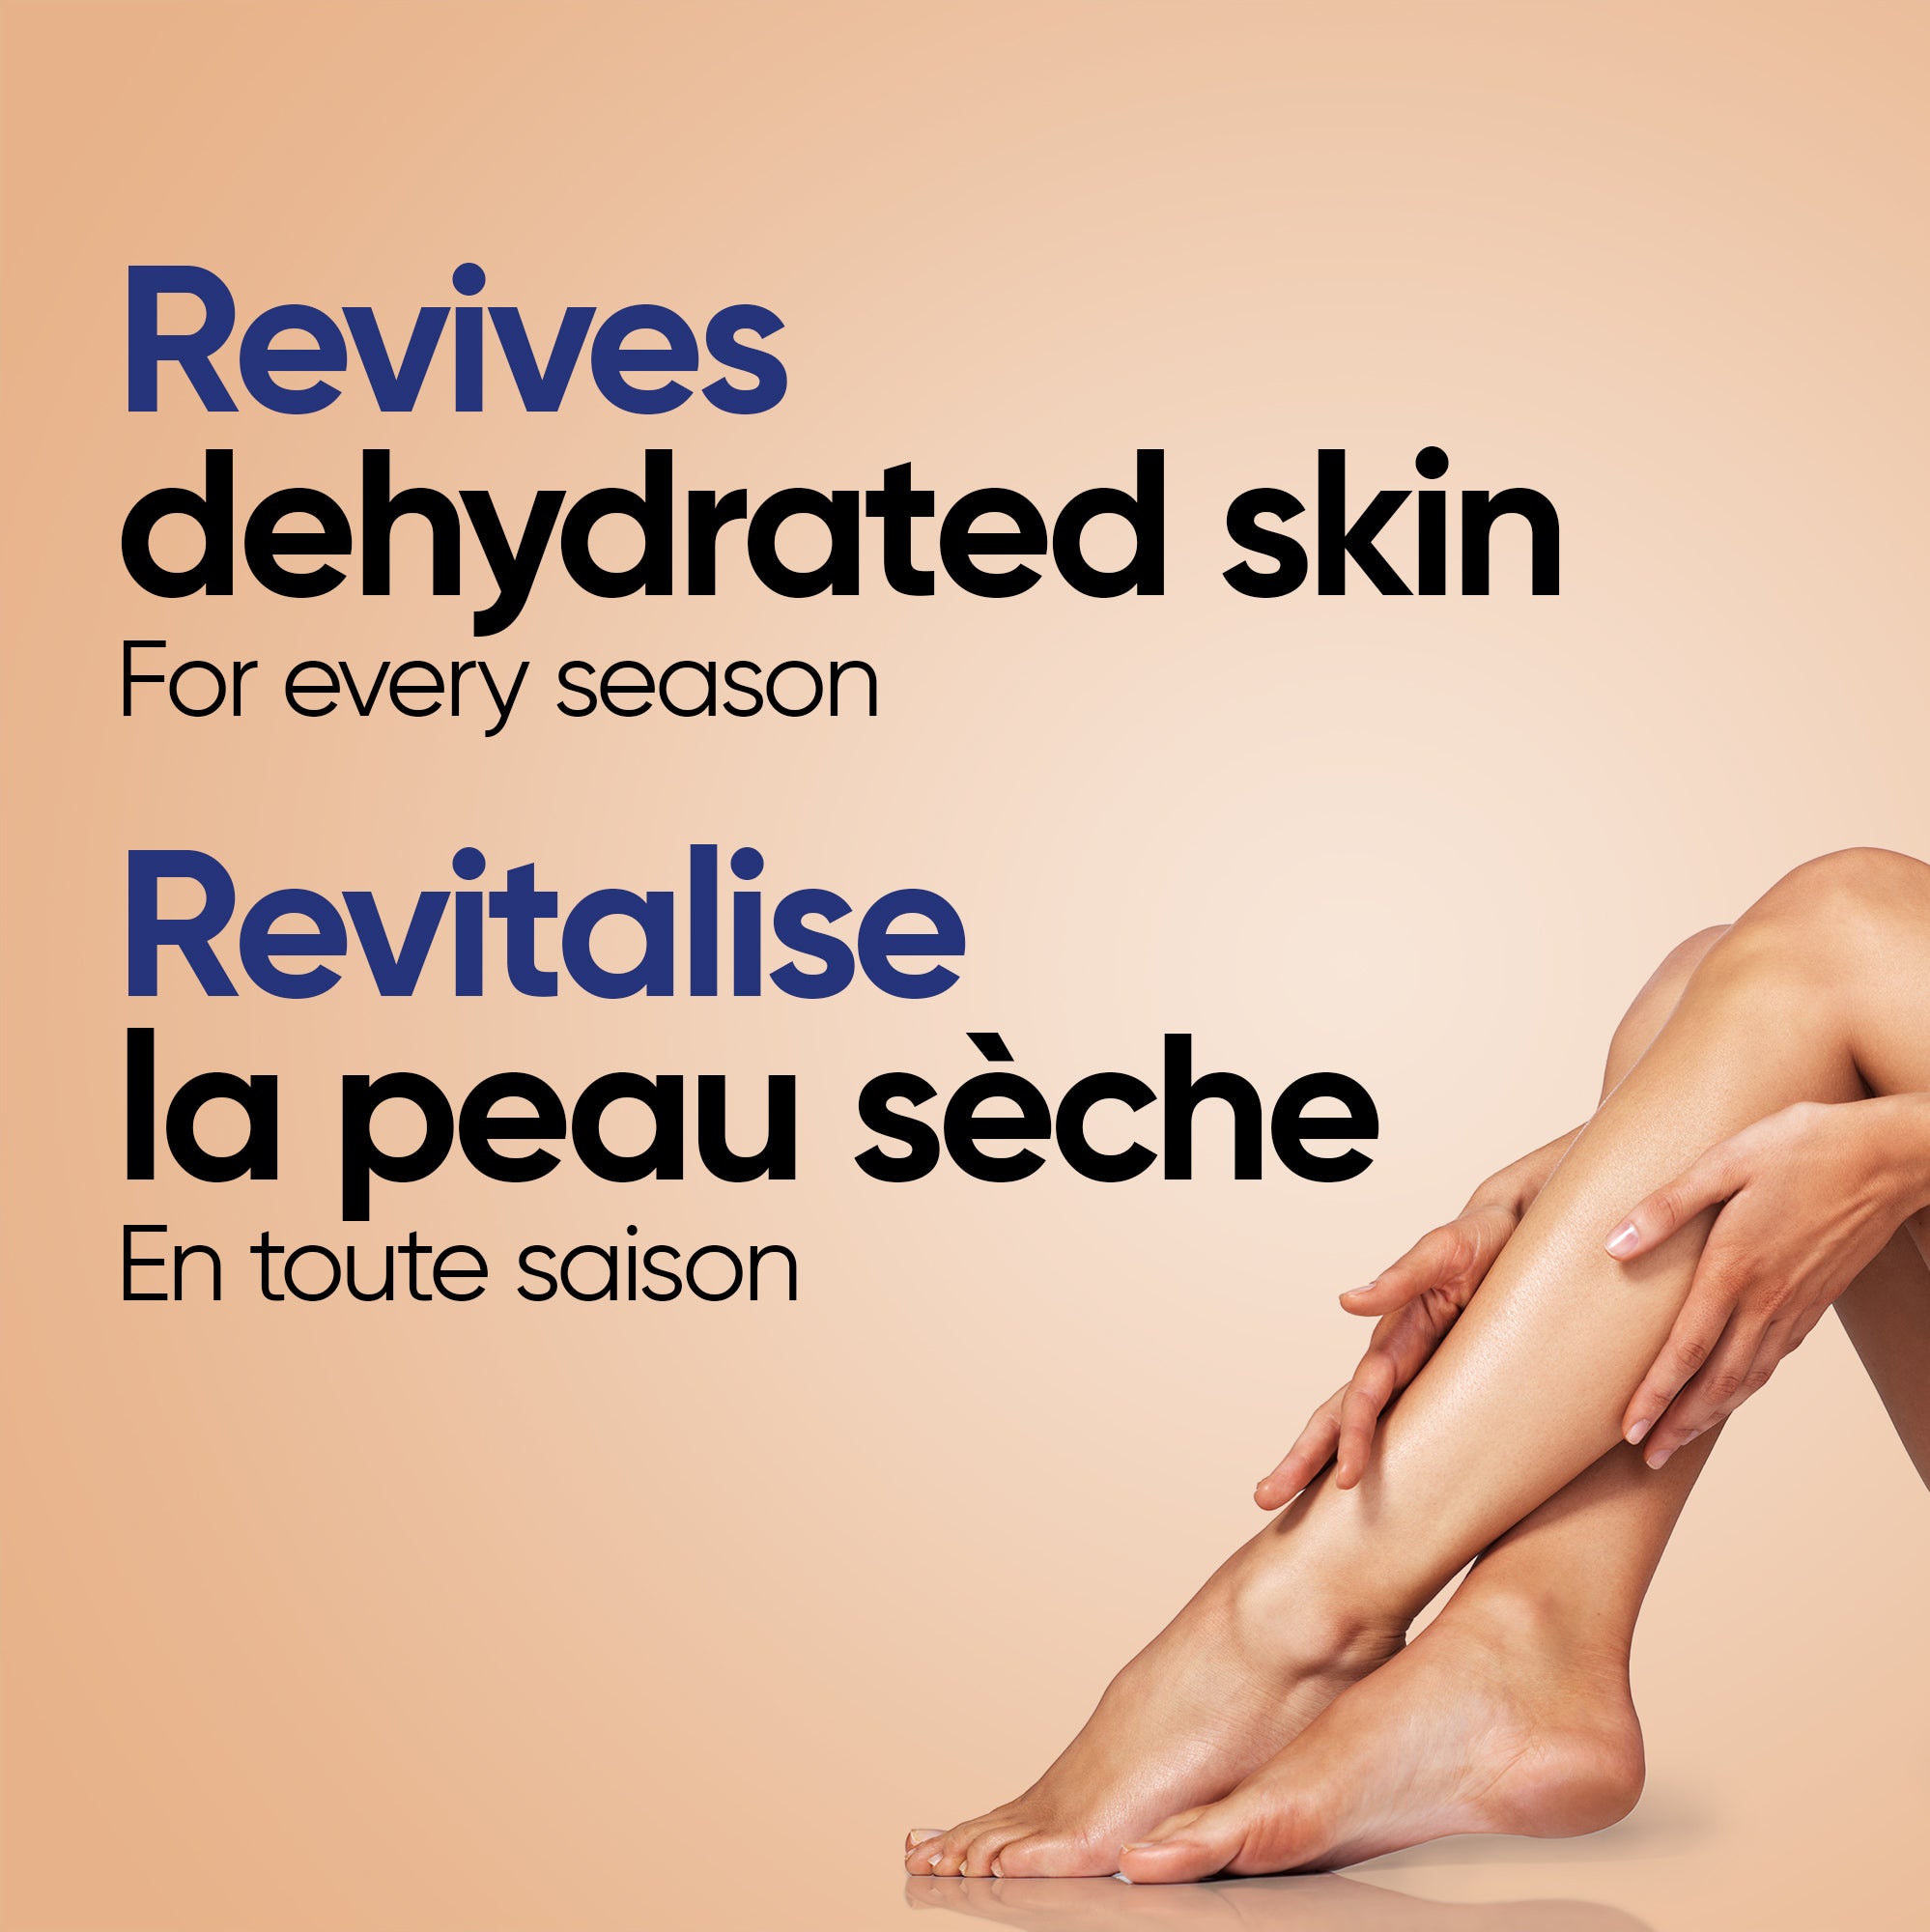 English: Revives dehydrated skin for every season Français: Ravive la peau déshydratée peu importe la saison